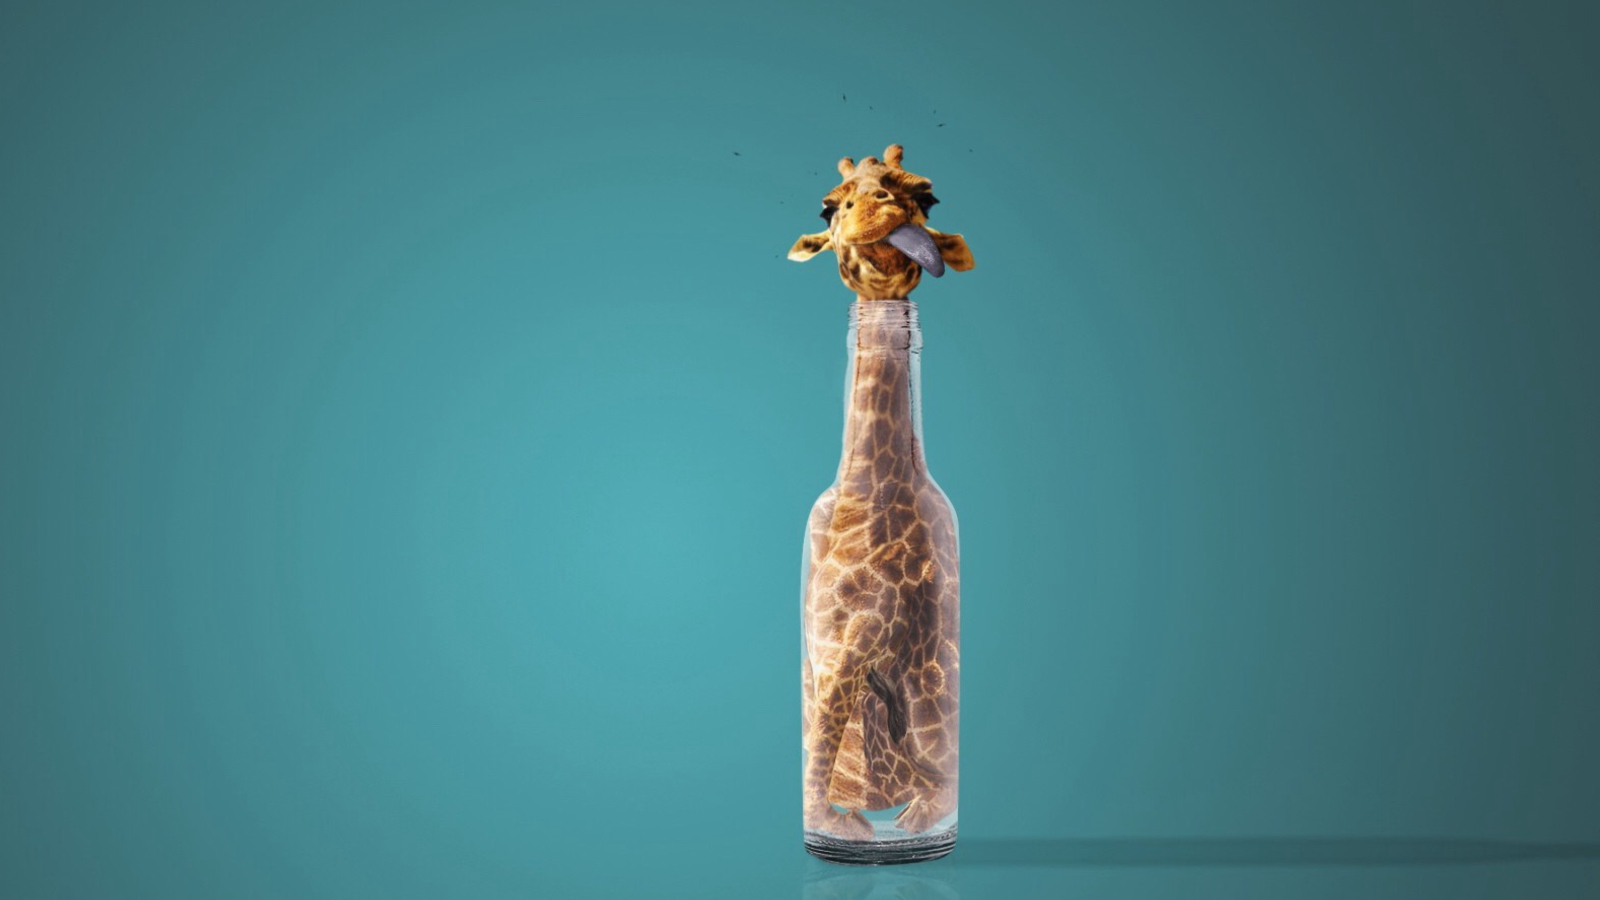 Sfondi Giraffe In Bottle 1600x900